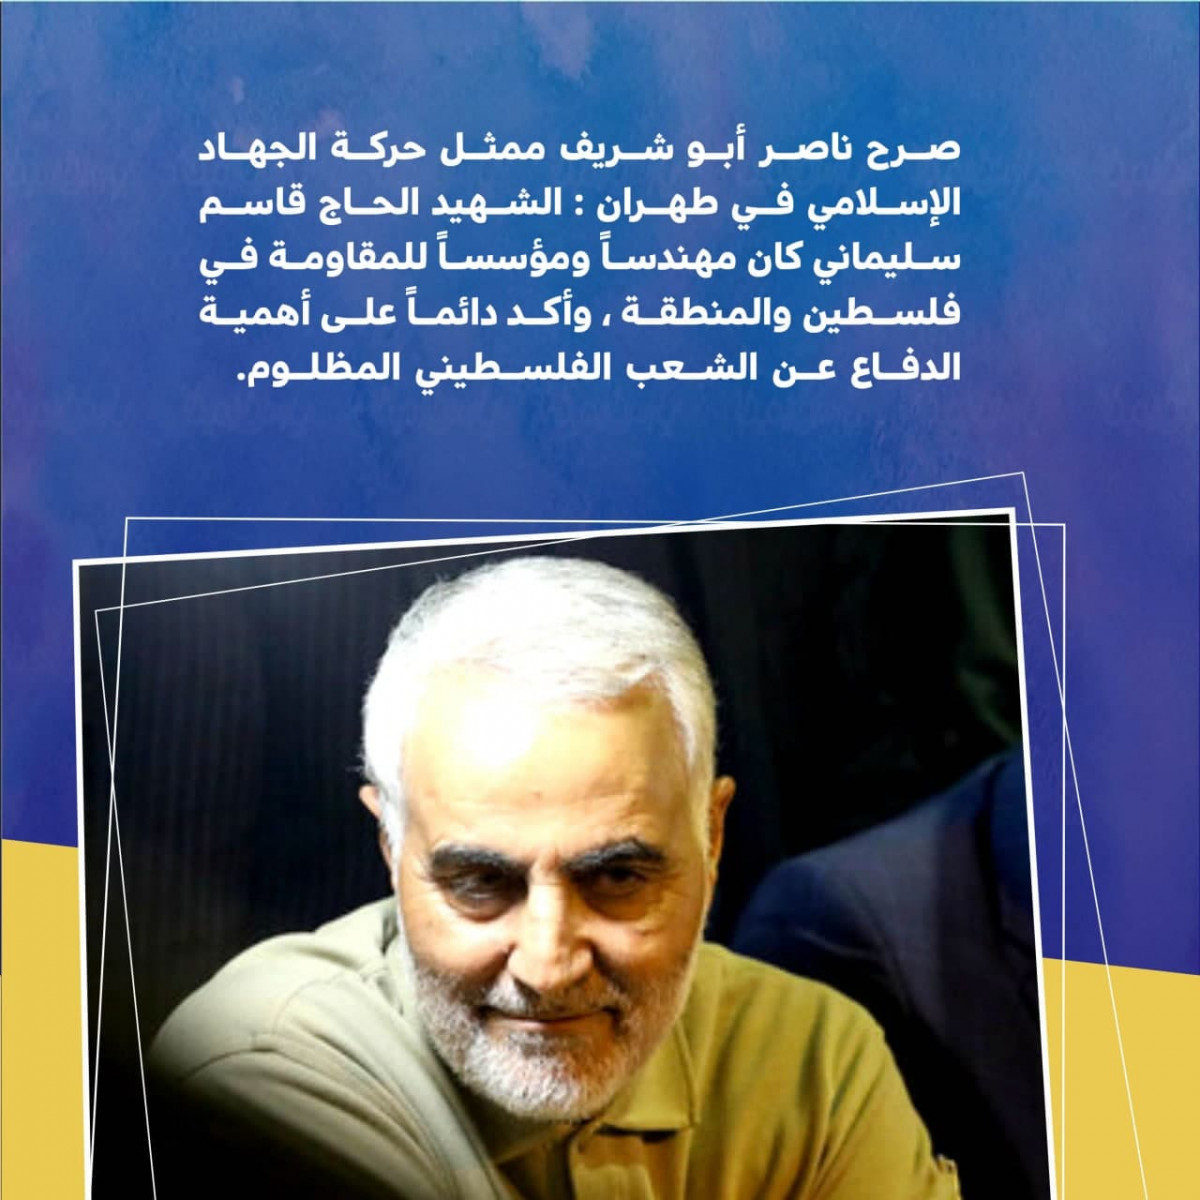 صرح ناصر أبو شريف ممثل حركة الجهاد الإسلامي في طهران